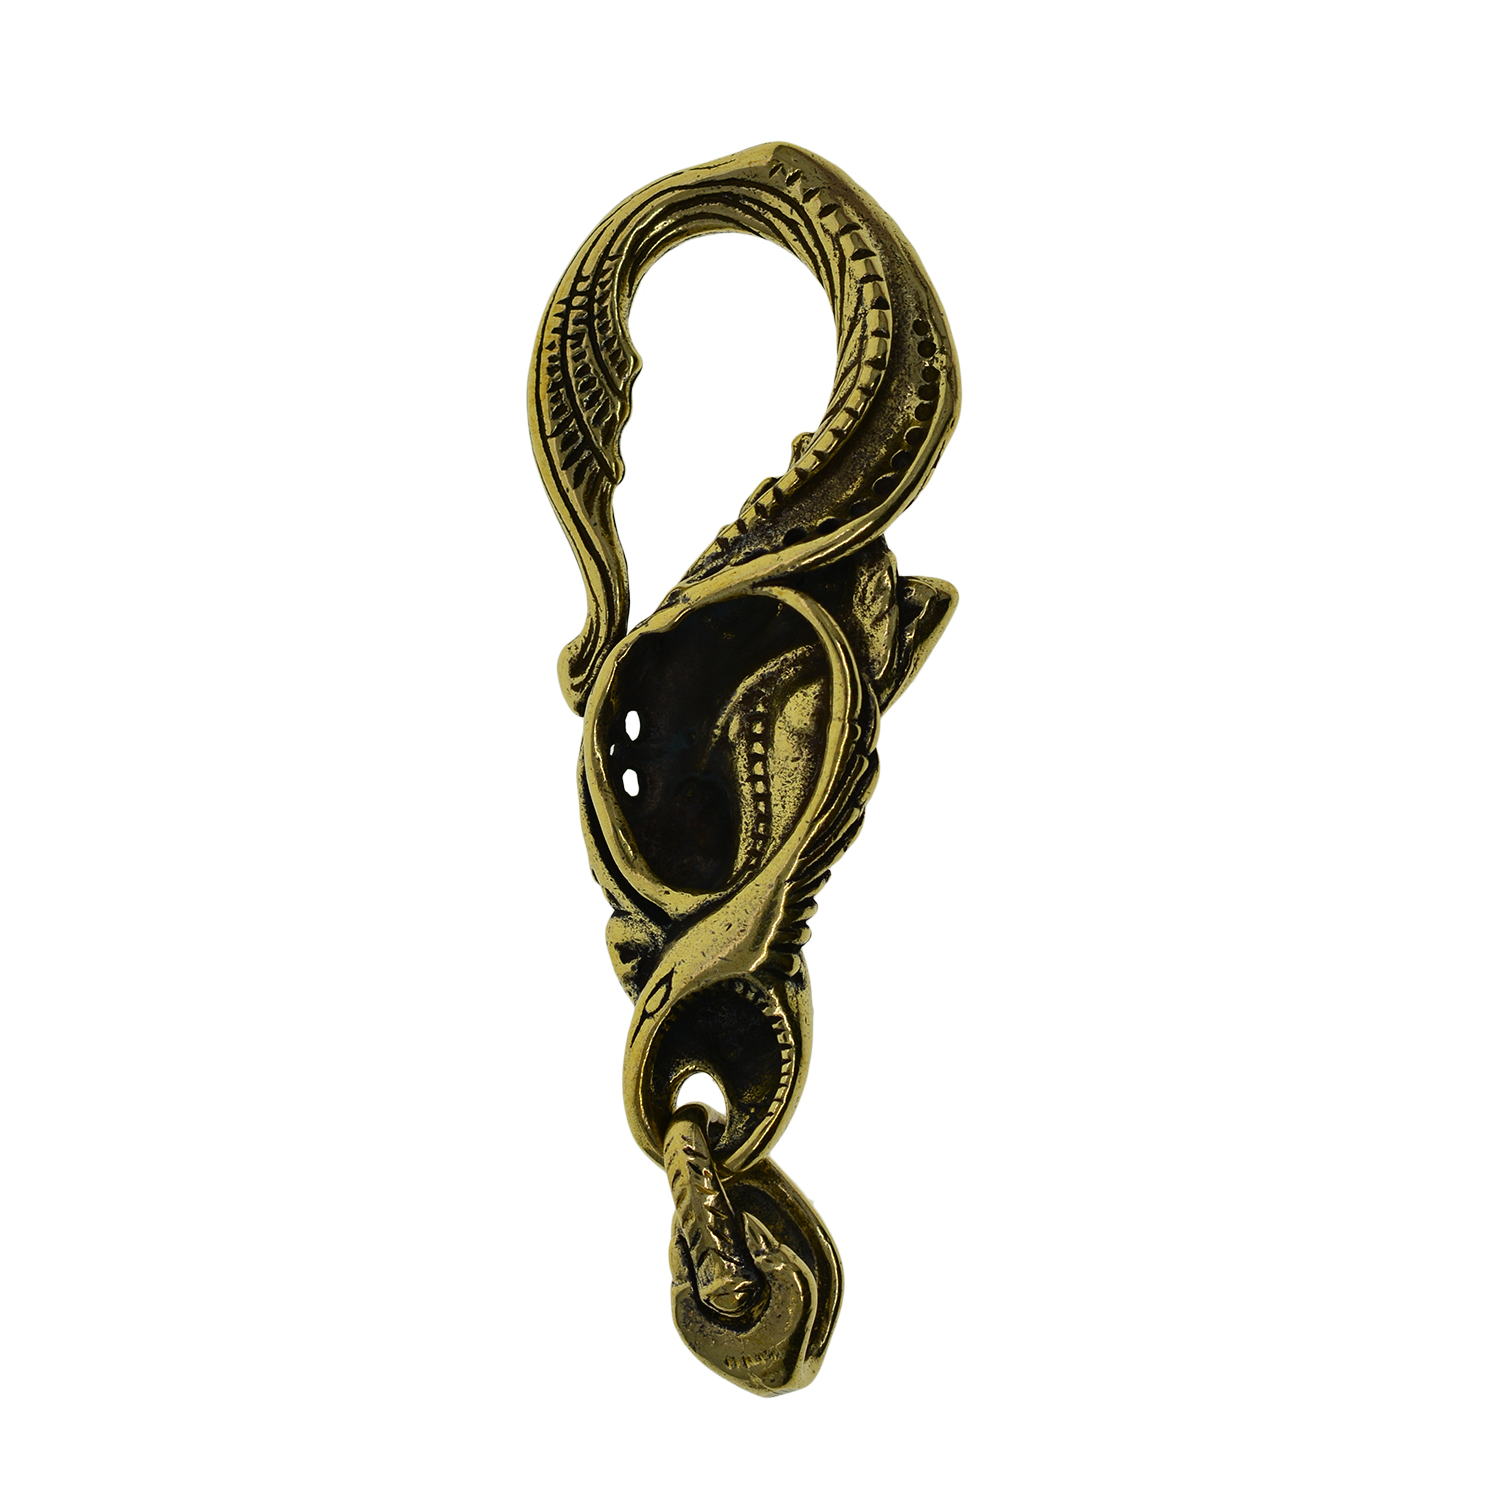 Schlüsselringe handgefertigt super feiner retro messing mermaid hakenverschluss mit Schädel und Kreuzdekoration Lederhandwerk Schlüsselanlagen Schlüsselring FO